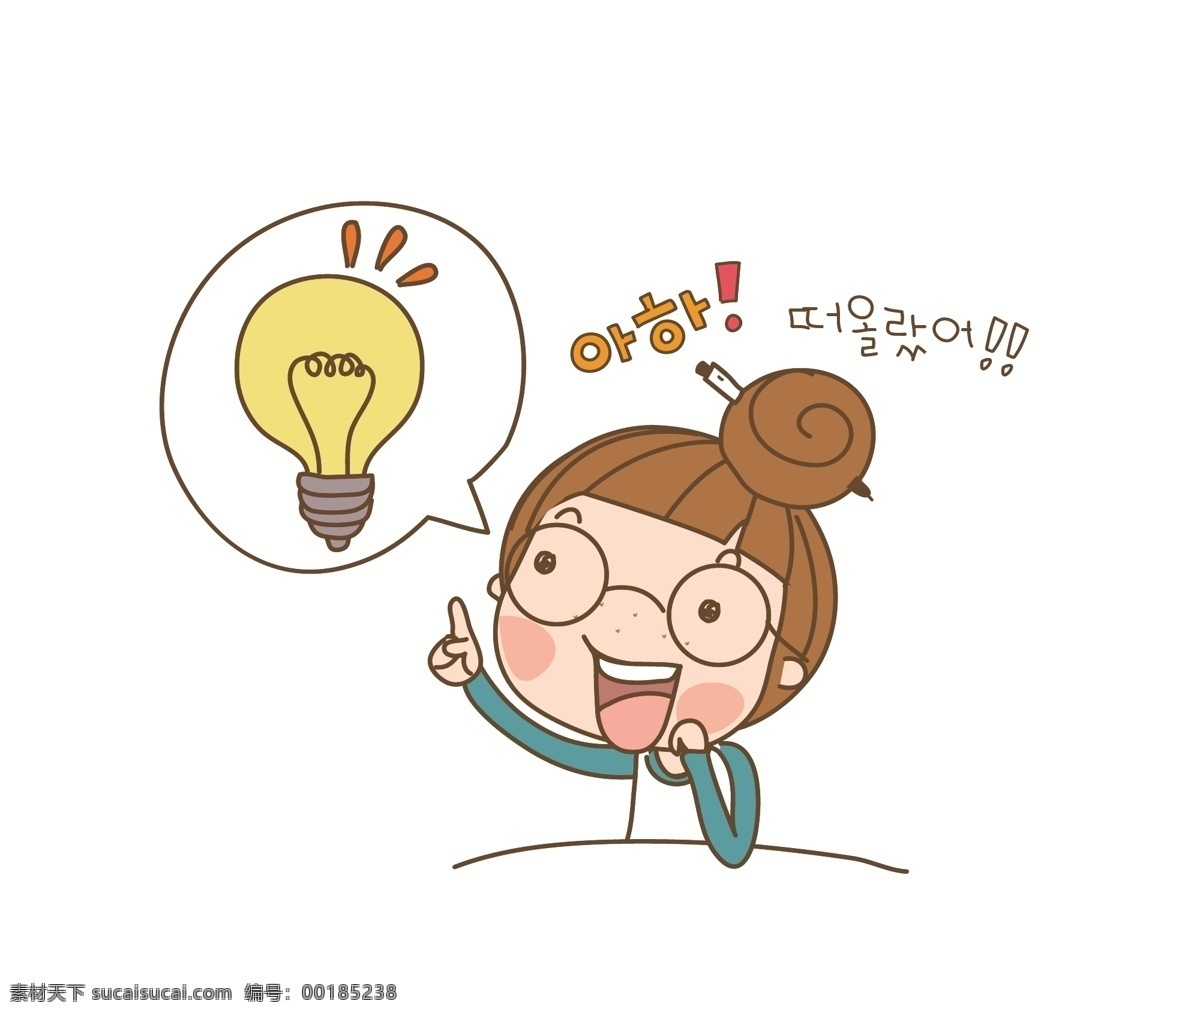 卡通 外国人 灵感 韩国 人物 韩国卡通人物 矢量素材 韩国女孩 各种表情 生活场景 人物设定 q版 搞笑人物 矢量 卡通人物 外国卡通人